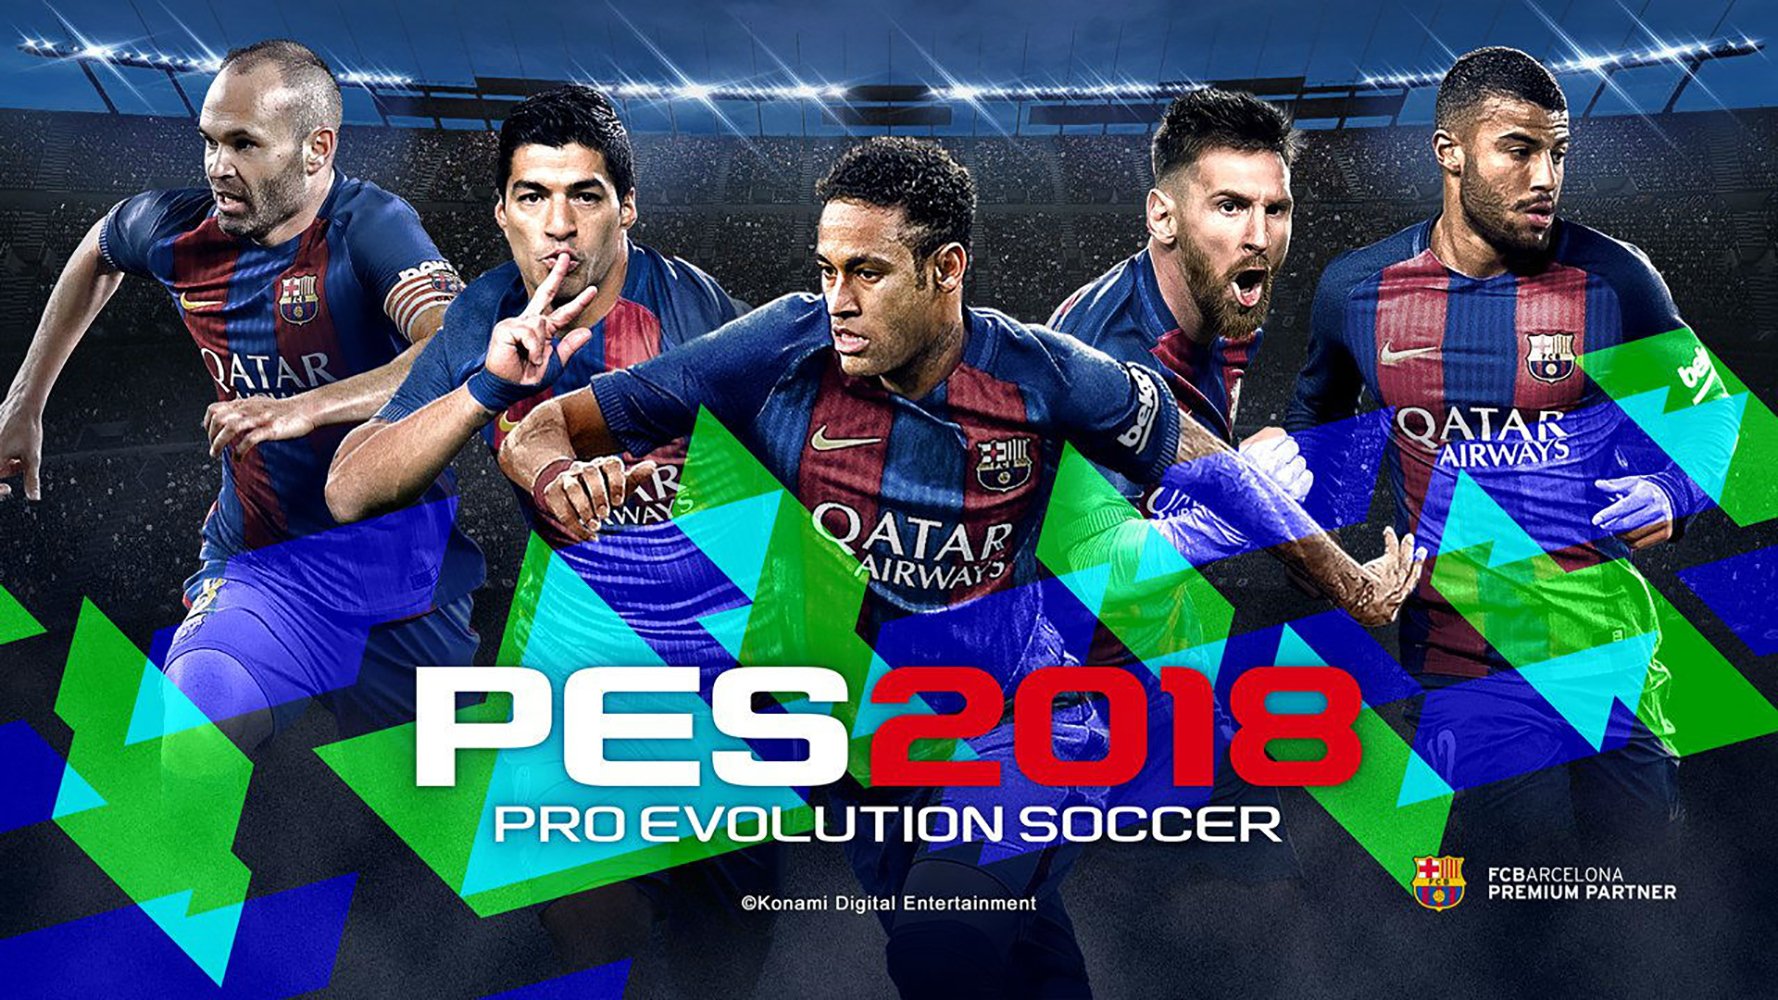 Pro Evolution Soccer HD Wallpaper Background Image